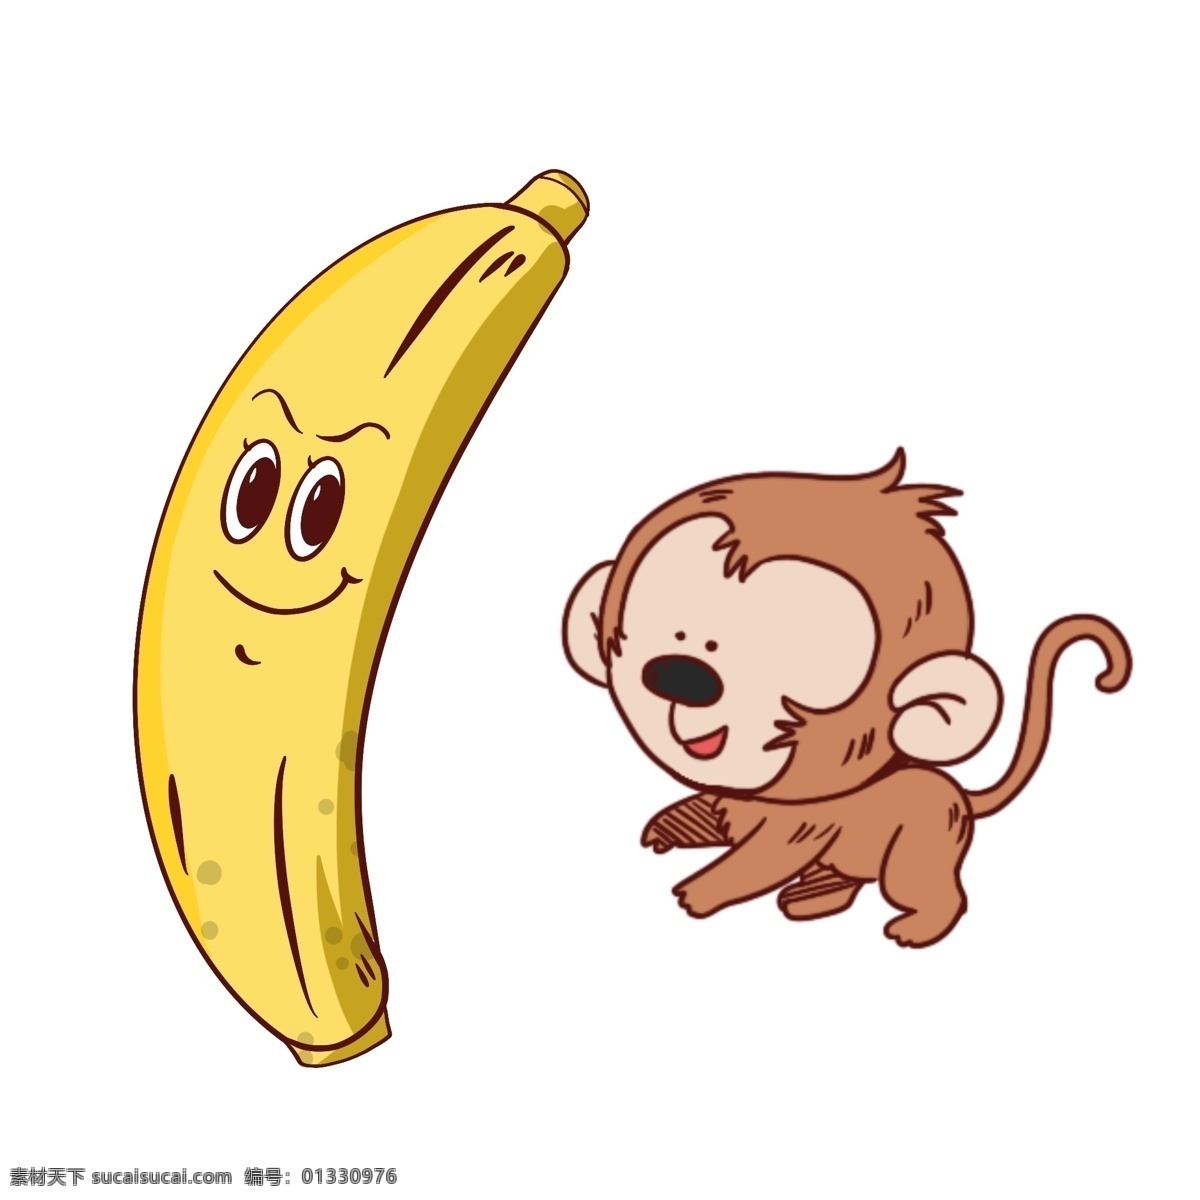 卡通香蕉 香蕉 简笔 手绘 夏季 手绘卡通素材 水彩 健康 水果 美味 彩绘 卡通设计